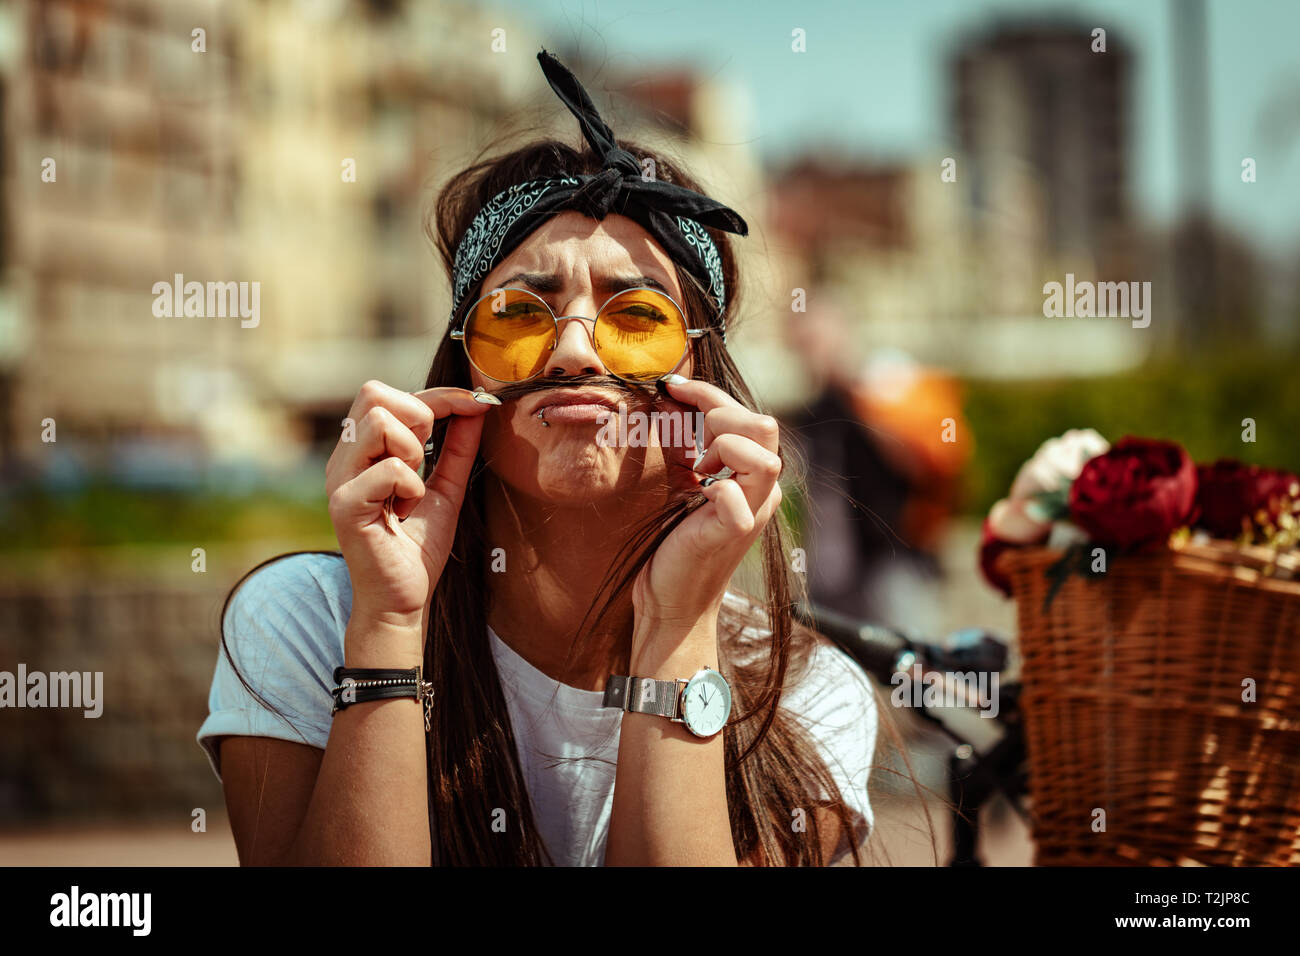 Recht glücklich junge Frau genießen und Spaß haben, schnurrbärte mit Haaren, in einem Sommer sonnigen Tag, neben dem Fahrrad mit Blumenkorb. Stockfoto